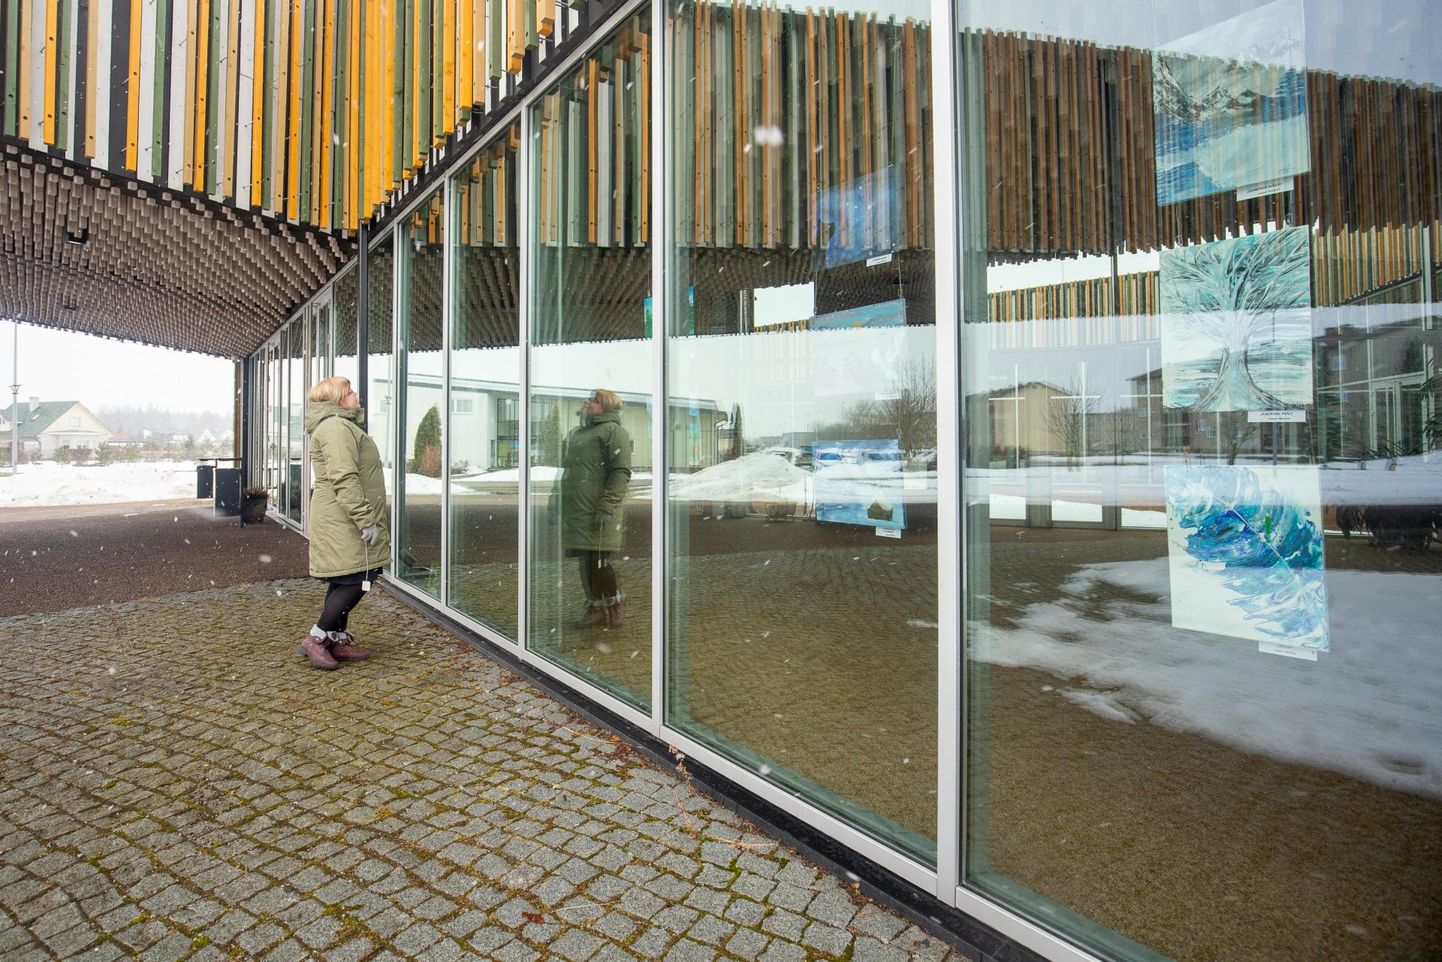 Sõmeru keskusehoone klaaspind on ühtlasi näitusepind, kus praegu kahe koolitüdruku Marian Möldri ja Stefani Tsvetkovi näitus "Naeratav kaelkirjak".